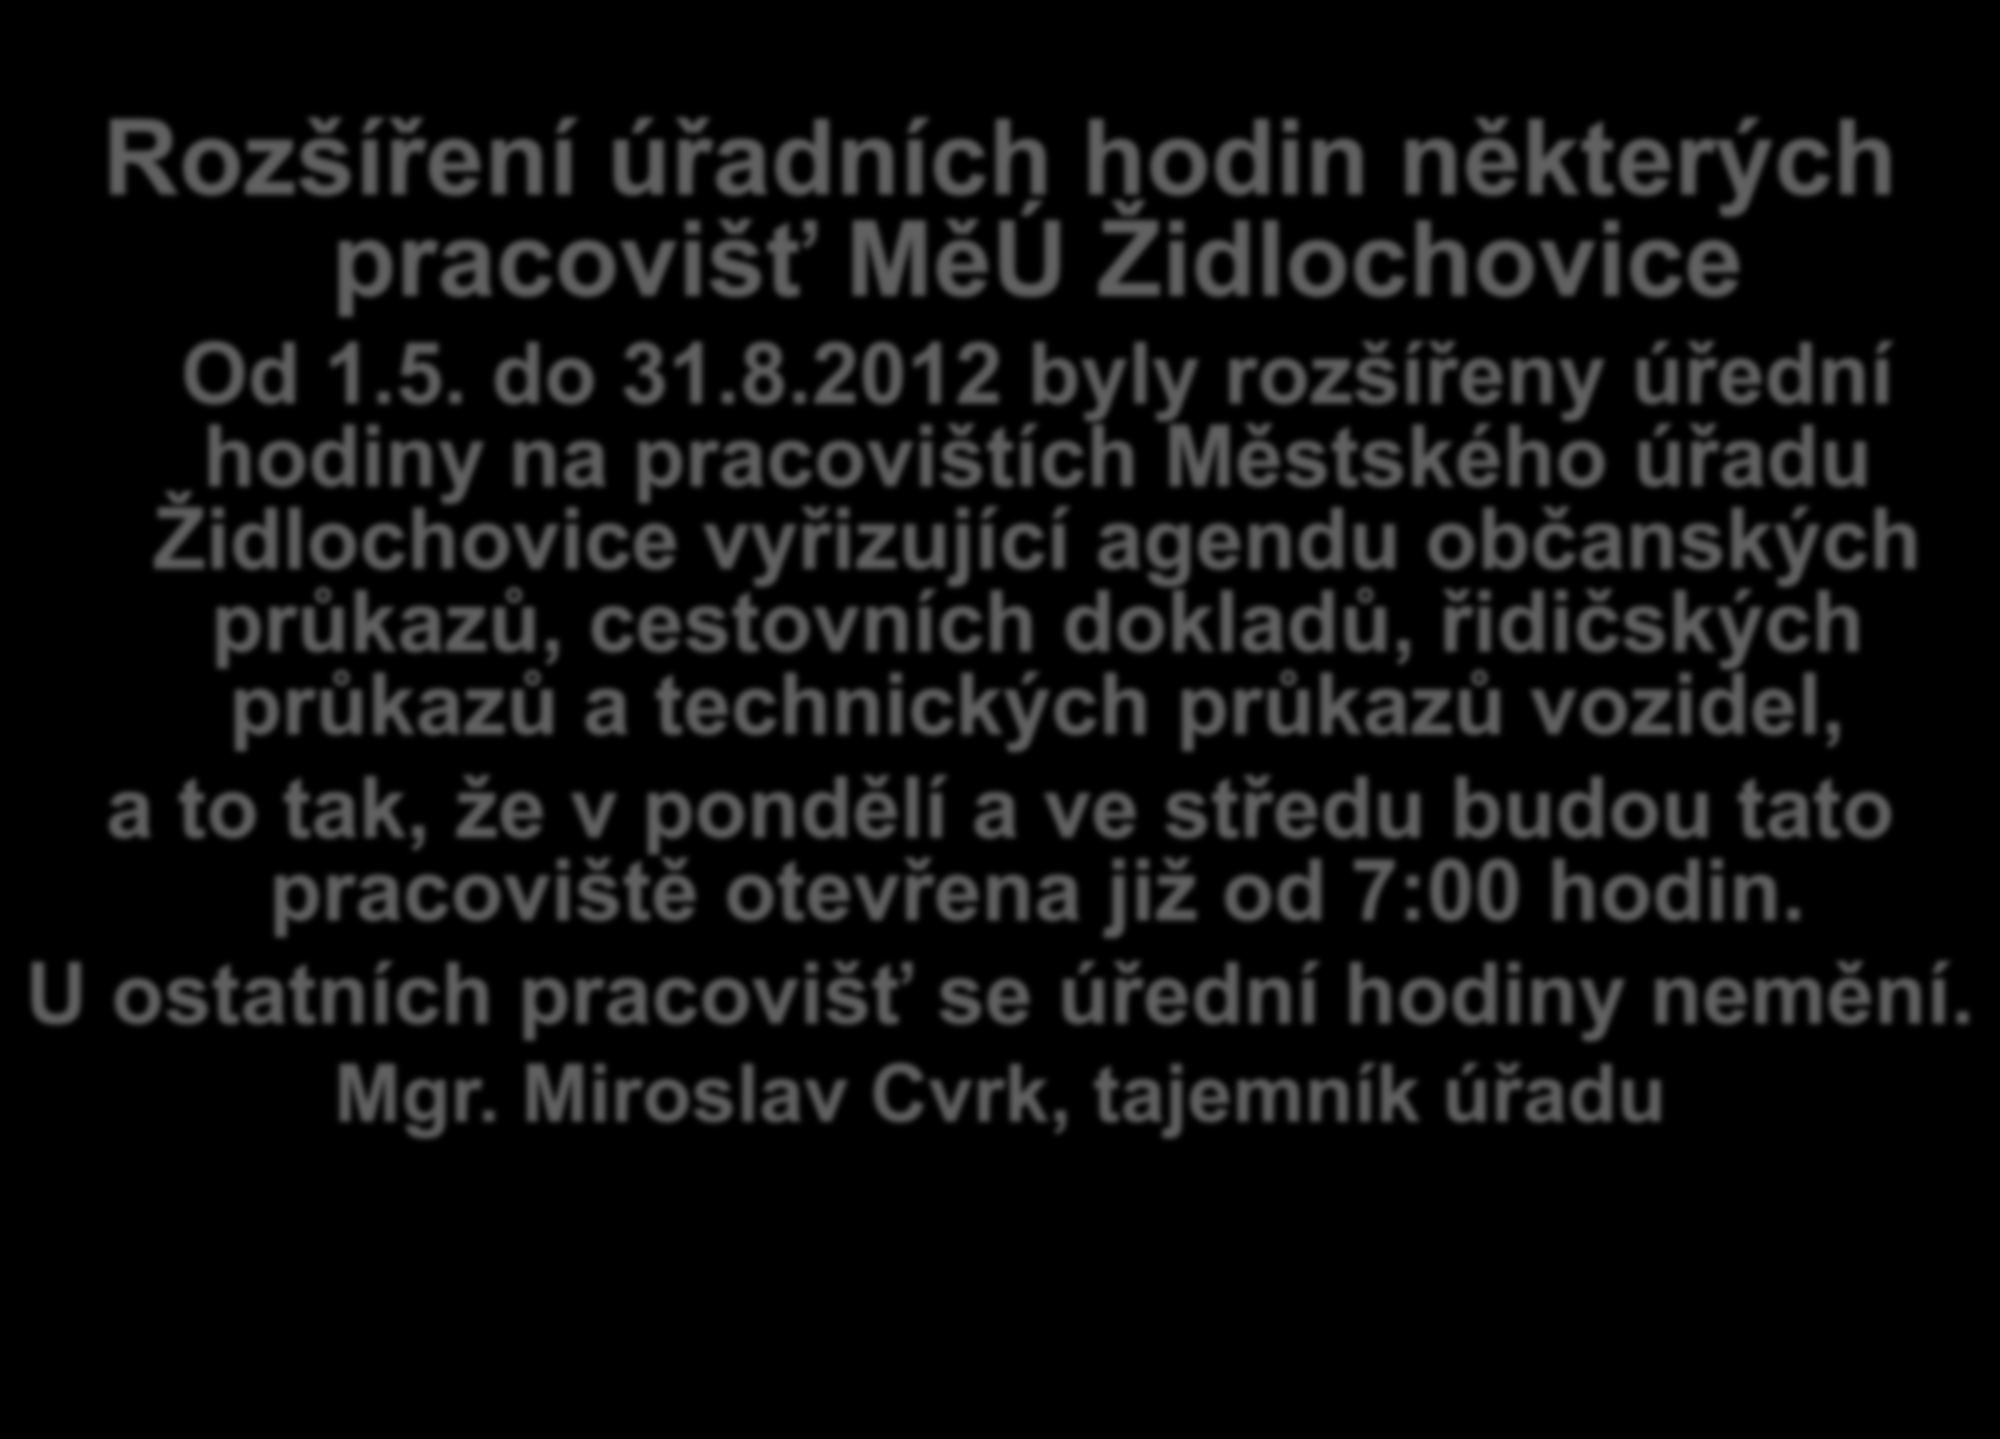 Rozšíření úřadních hodin některých pracovišť MěÚ Židlochovice Od 1.5. do 31.8.